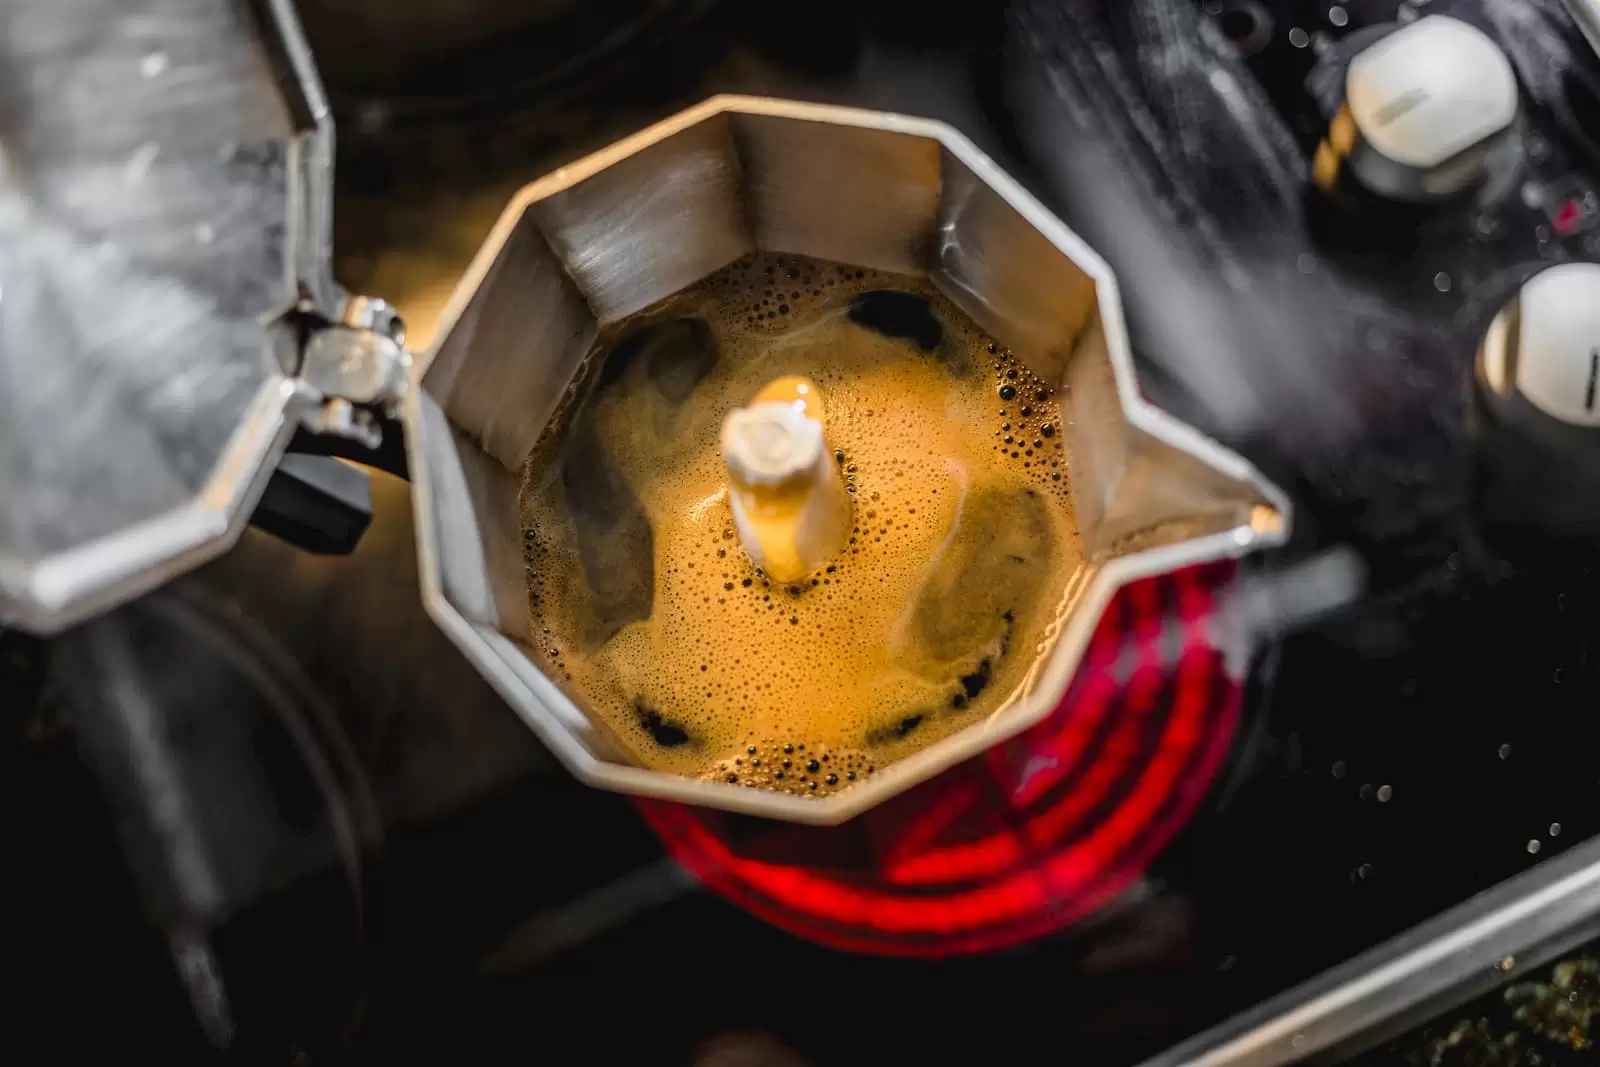 preparando café na cafeteira no fogão